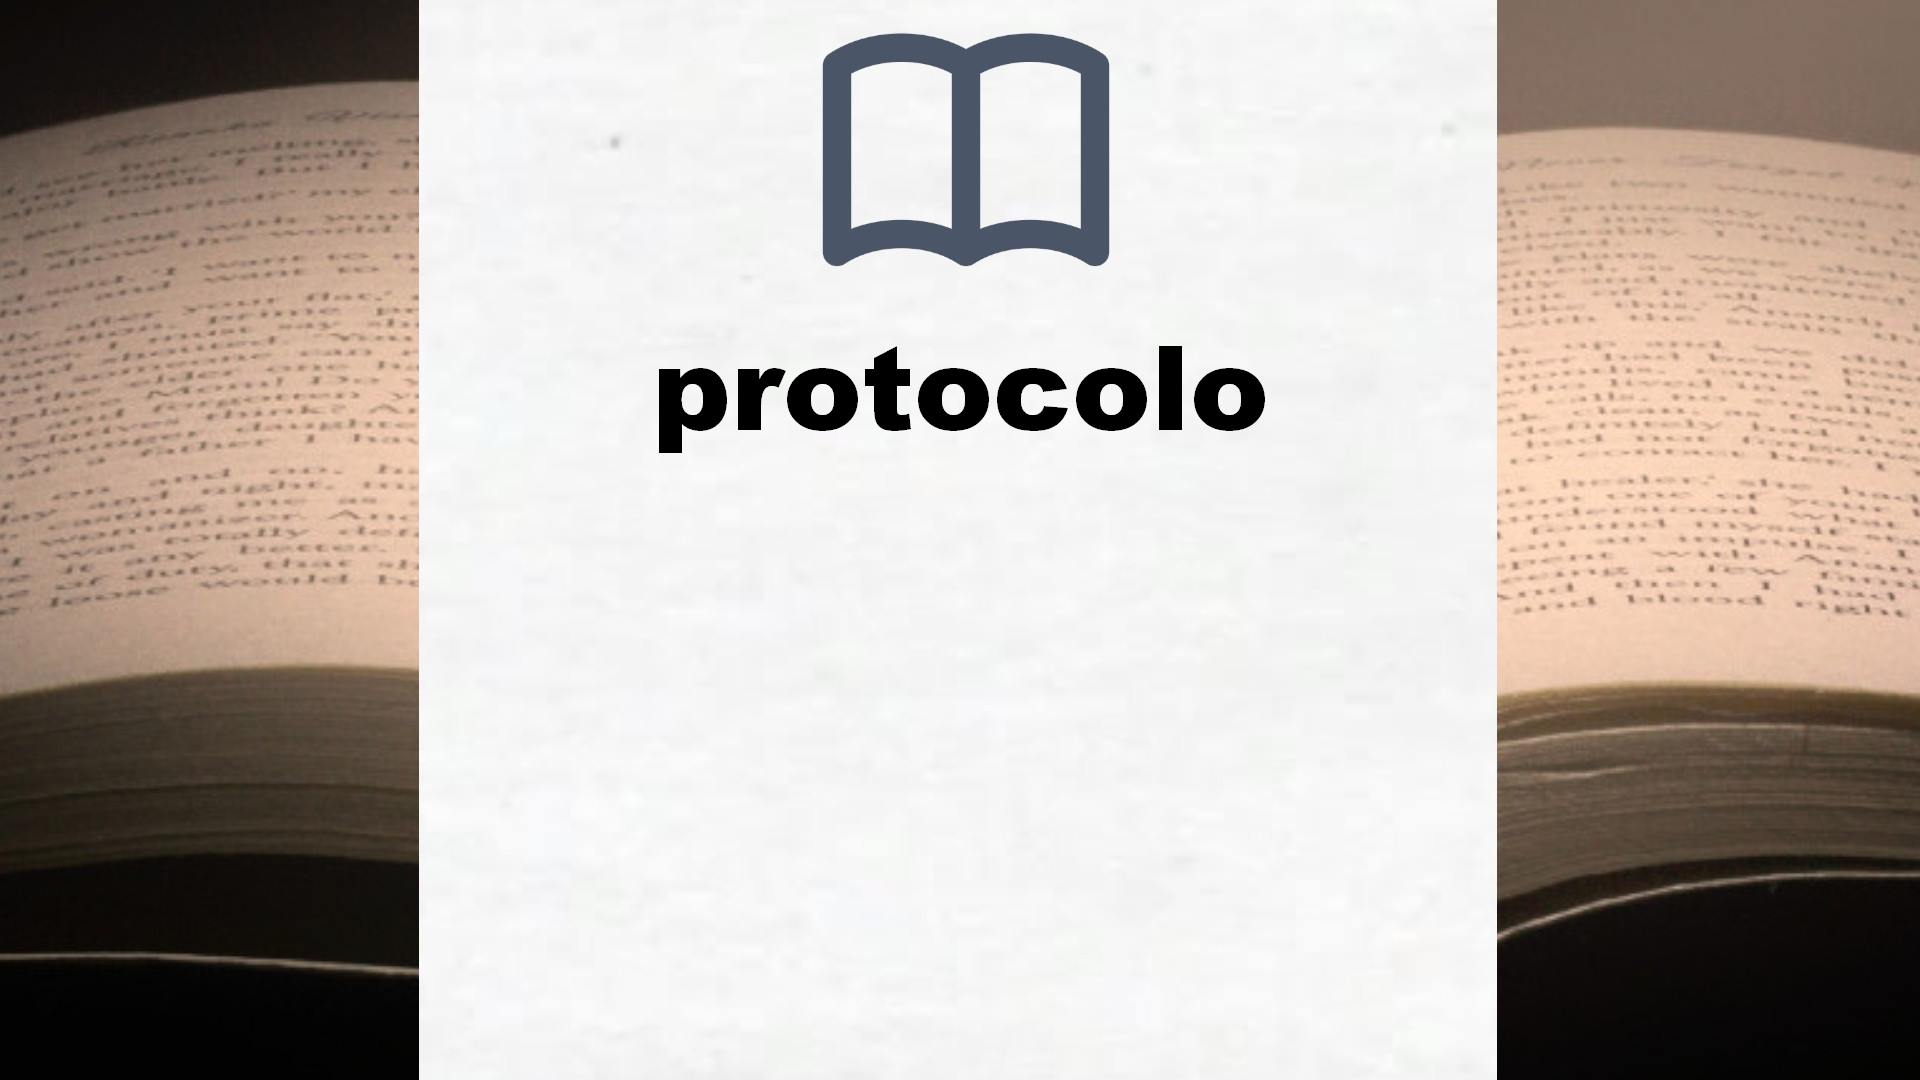 Libros sobre protocolo